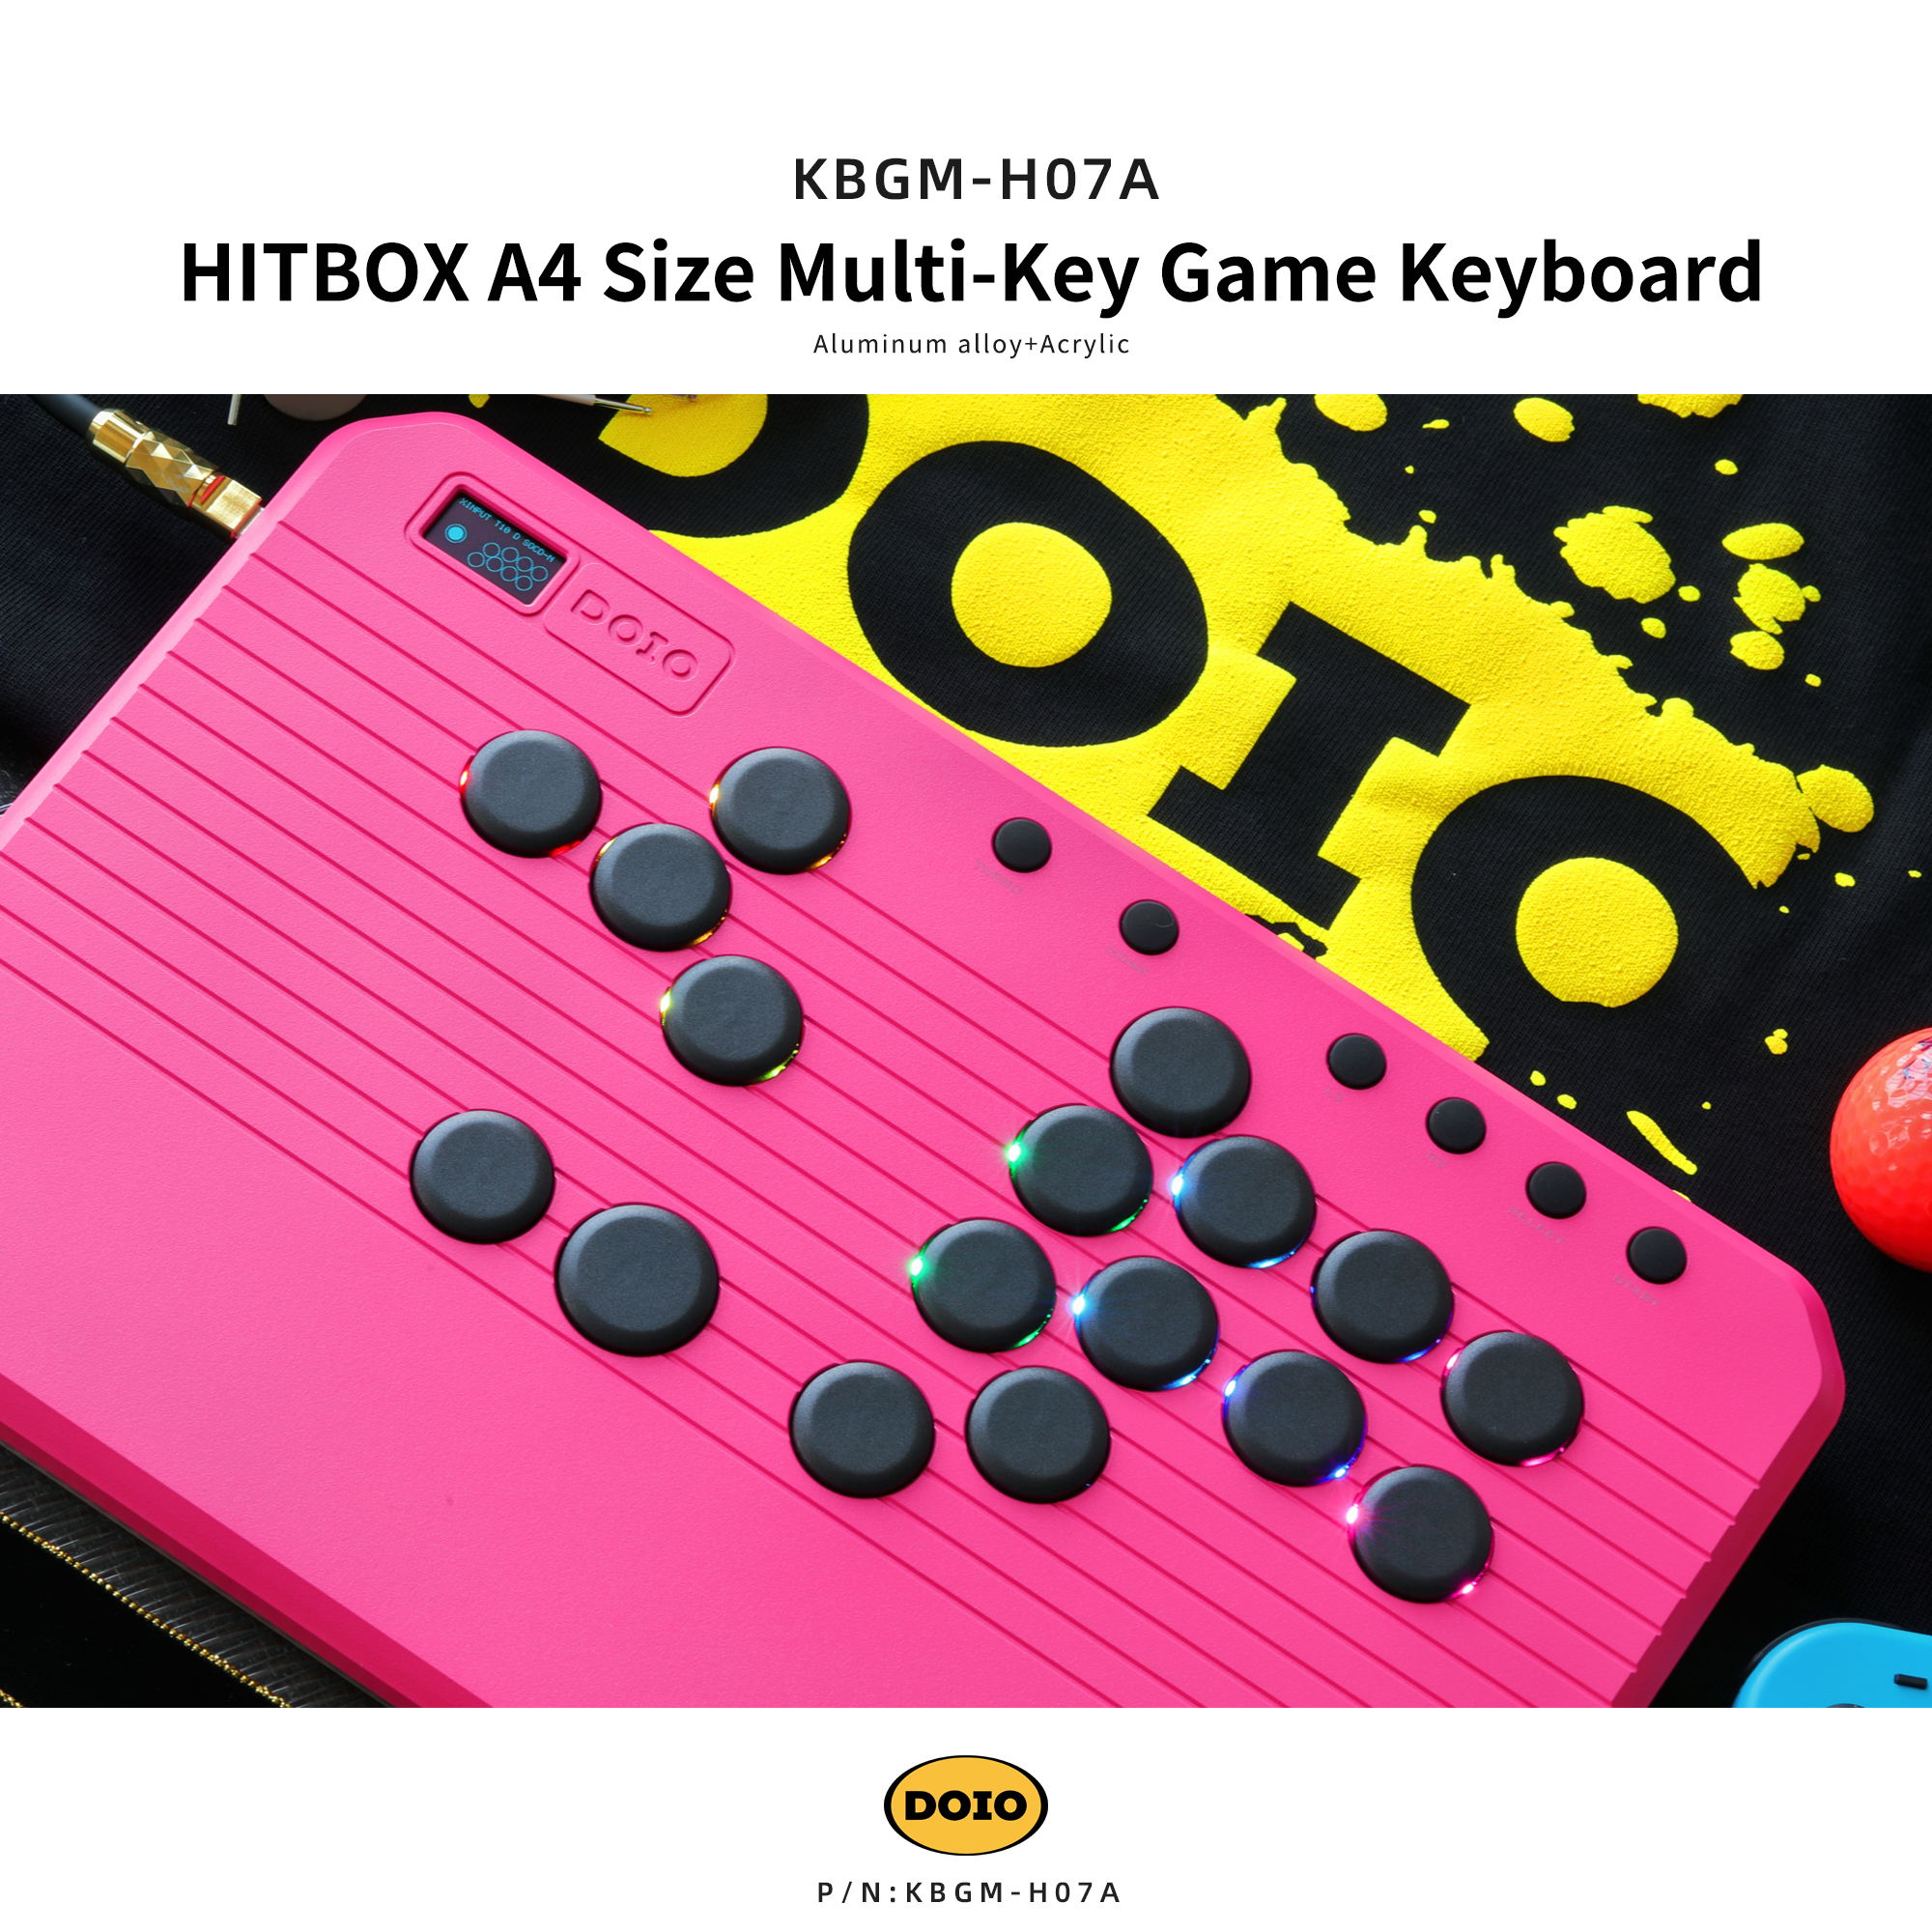 HITBOX A4 Size Multi-Key Game Keyboard KBGM-H07A